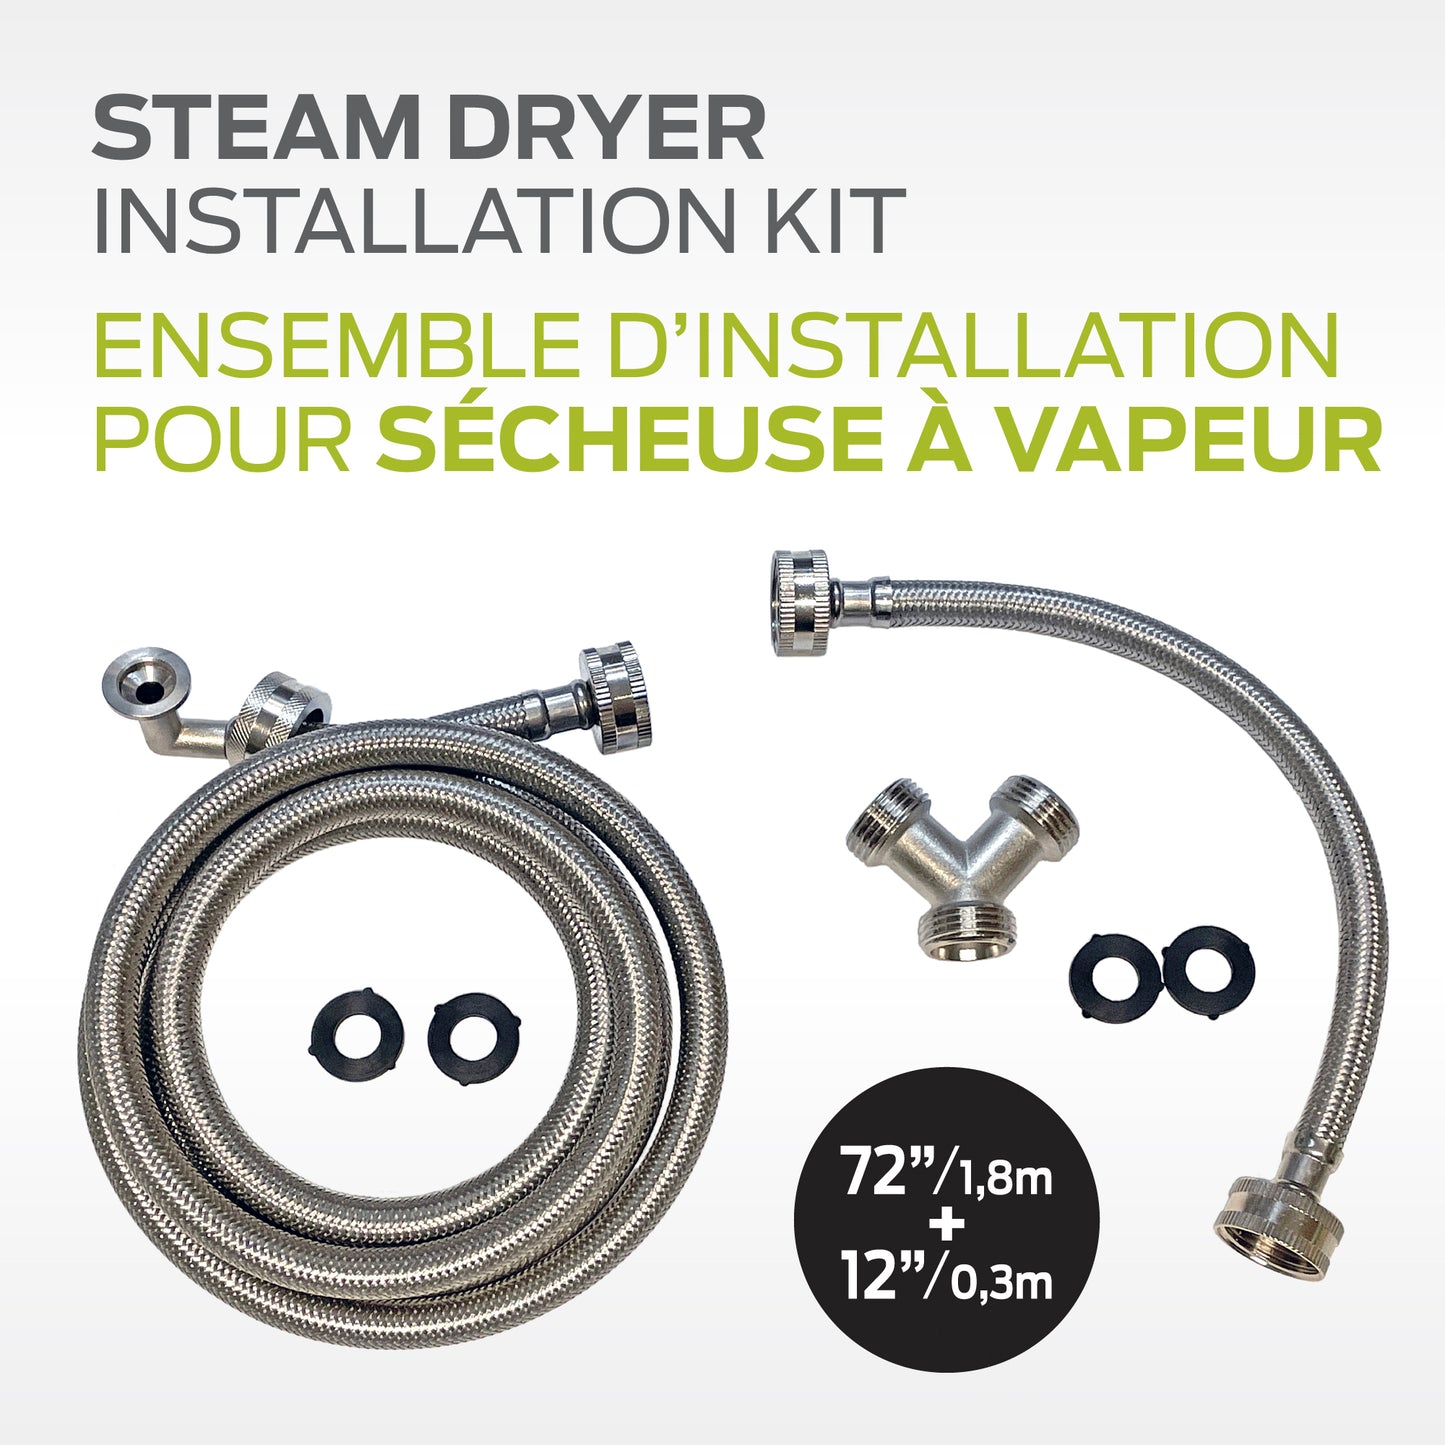 Flexible Steam Dryer Installation Kit - 72’’ / 1.8 m